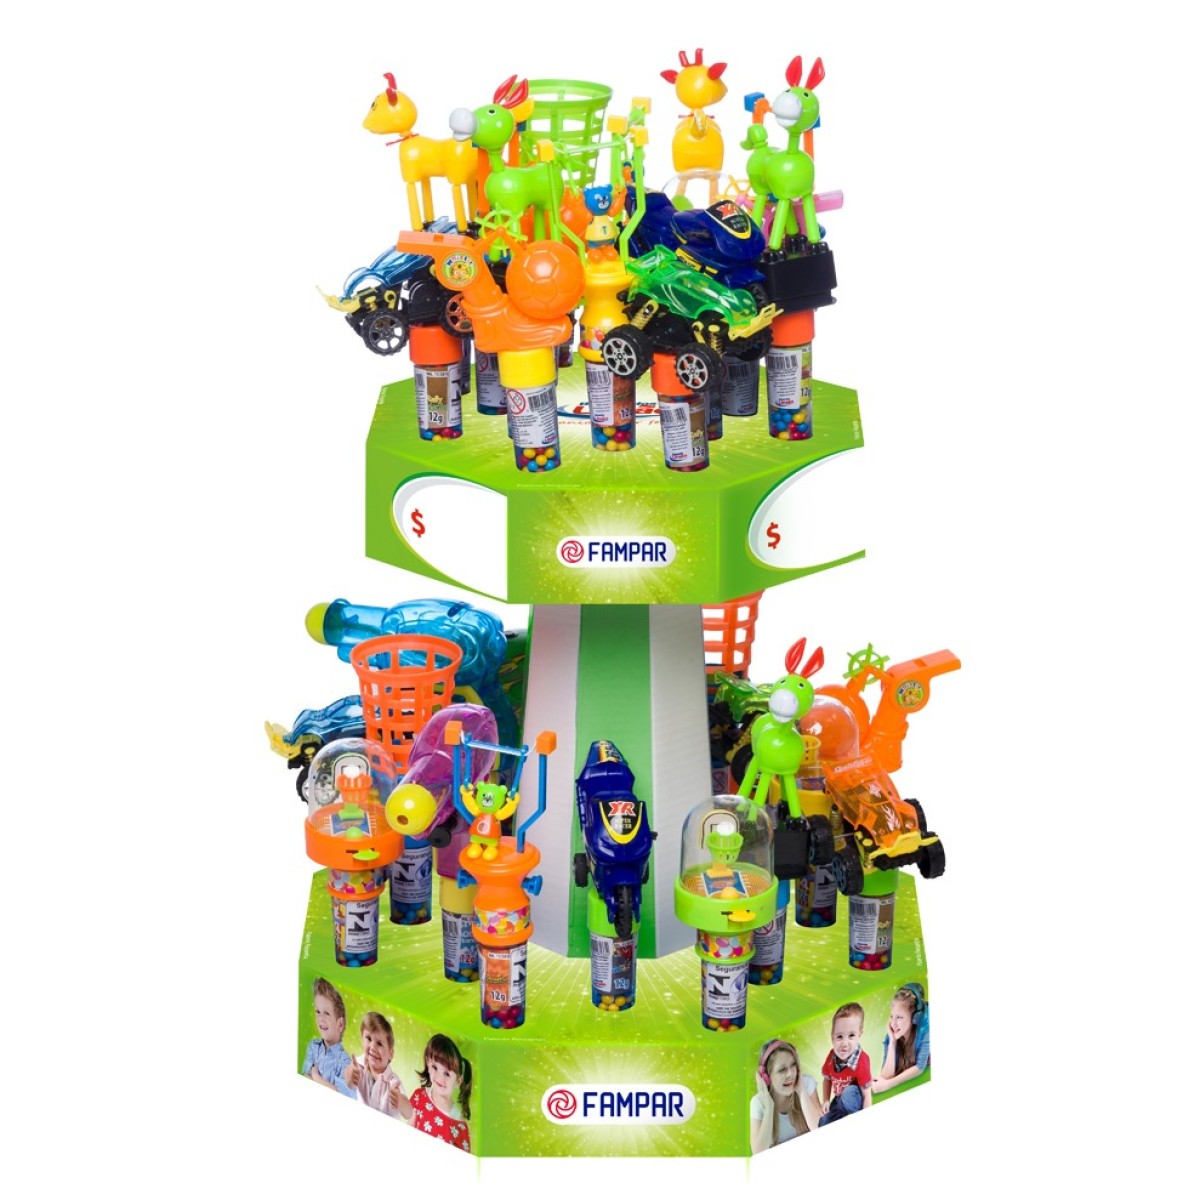 Kit combo verde 64 brinquedos sortidos para expor-27058137-33423